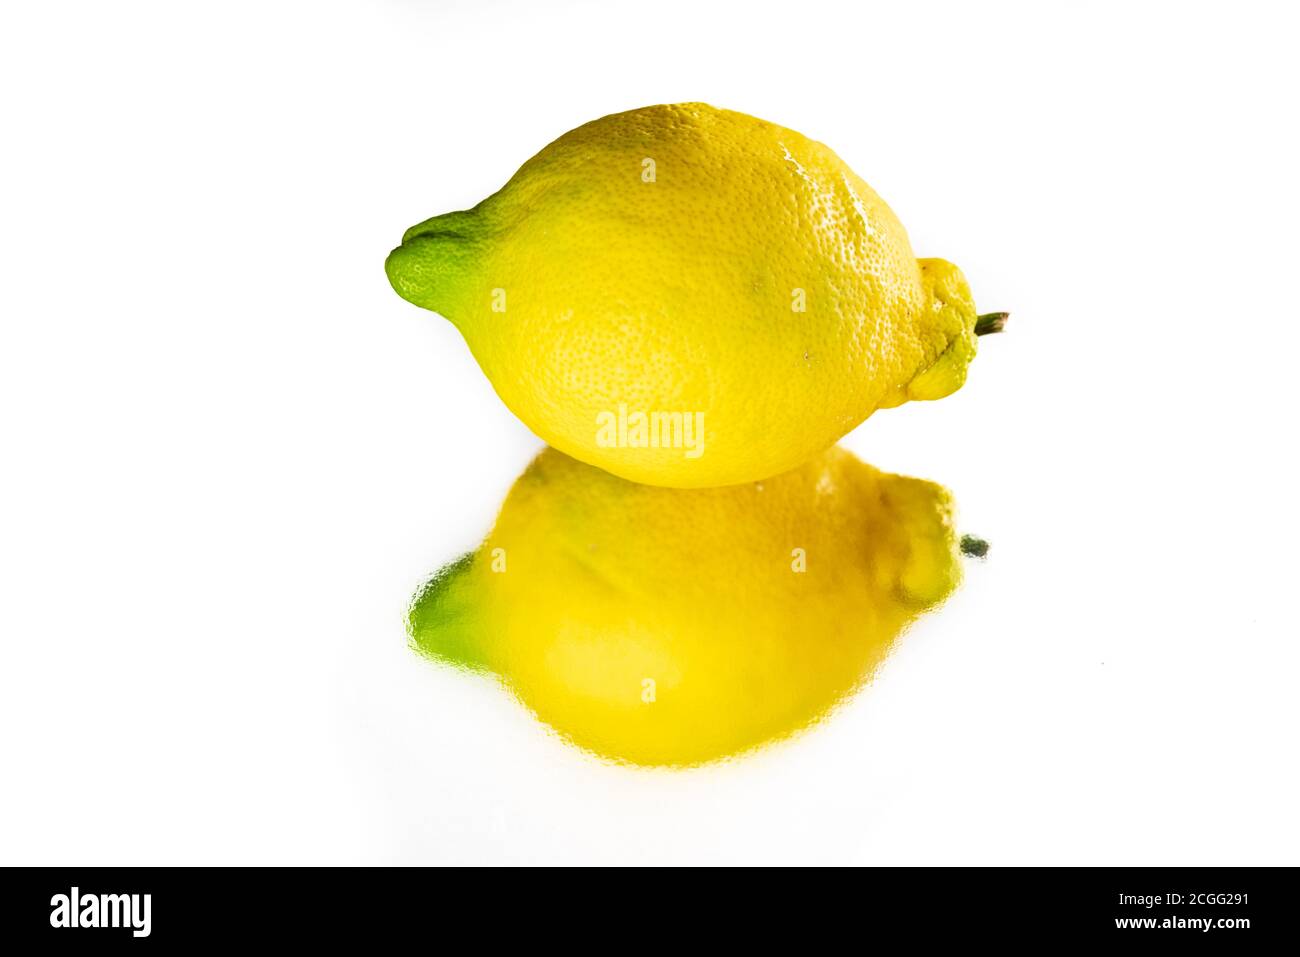 Whole lemon and reflection over white background Stock Photo